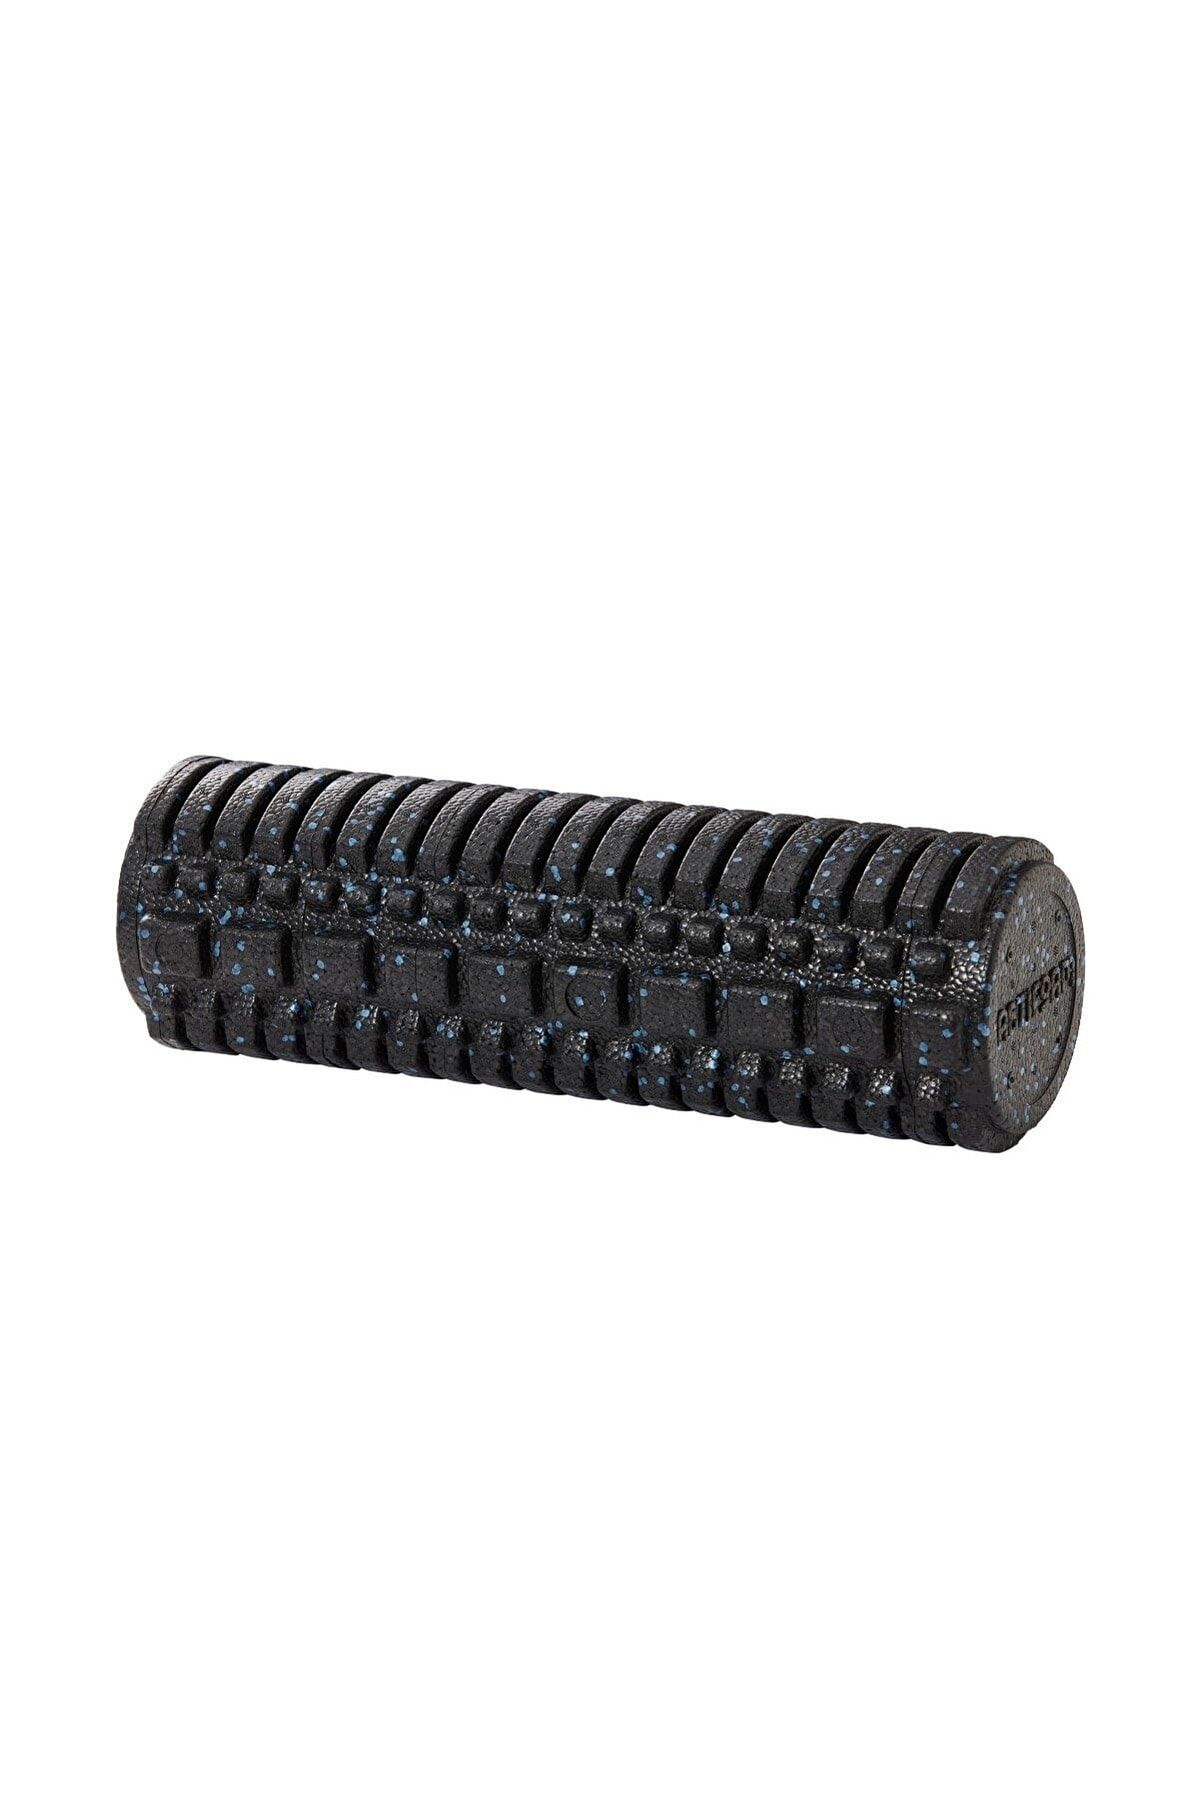 Genel Markalar Masaj Rulosu Foam Roller Tırtıklı Epp 45 cm